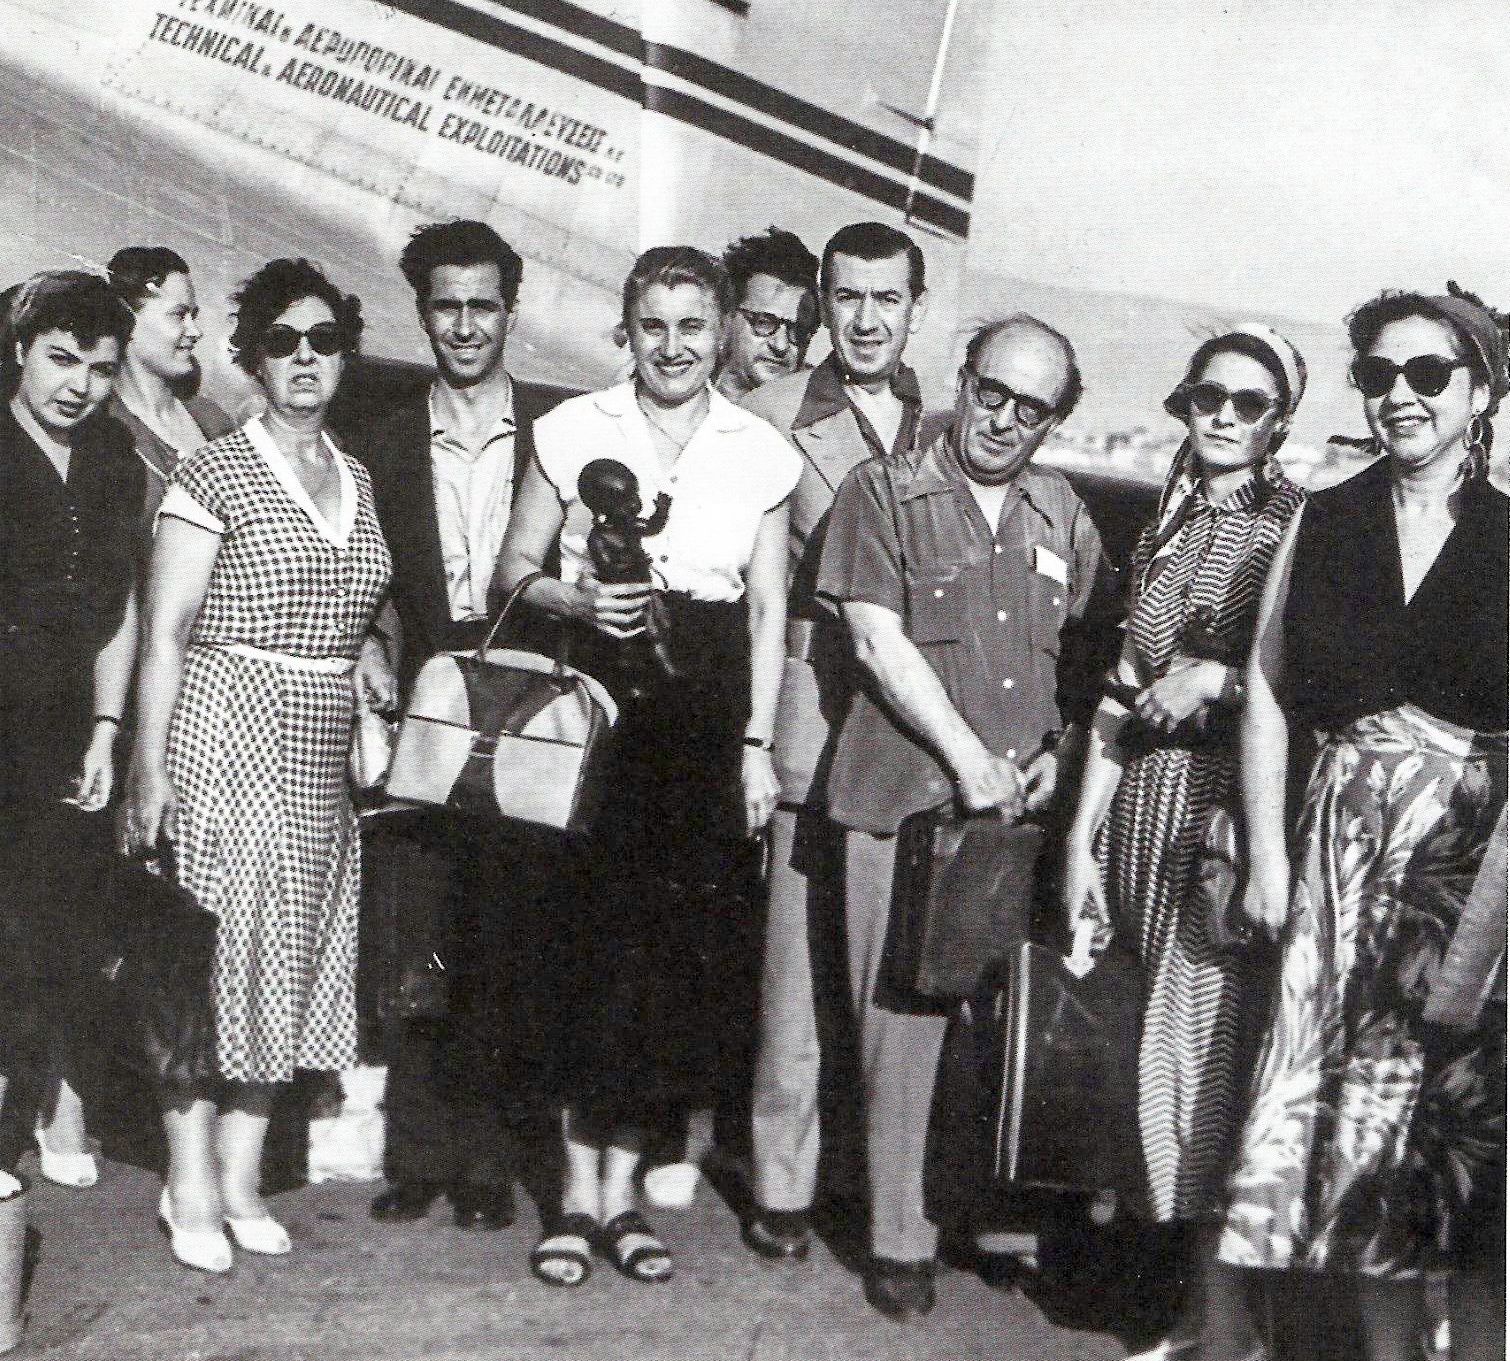 Ο θίασος του Βασίλη Λογοθετίδη επιστρέφει από την Αίγυπτο με αεροπλάνο της ΤΑΕ το 1950